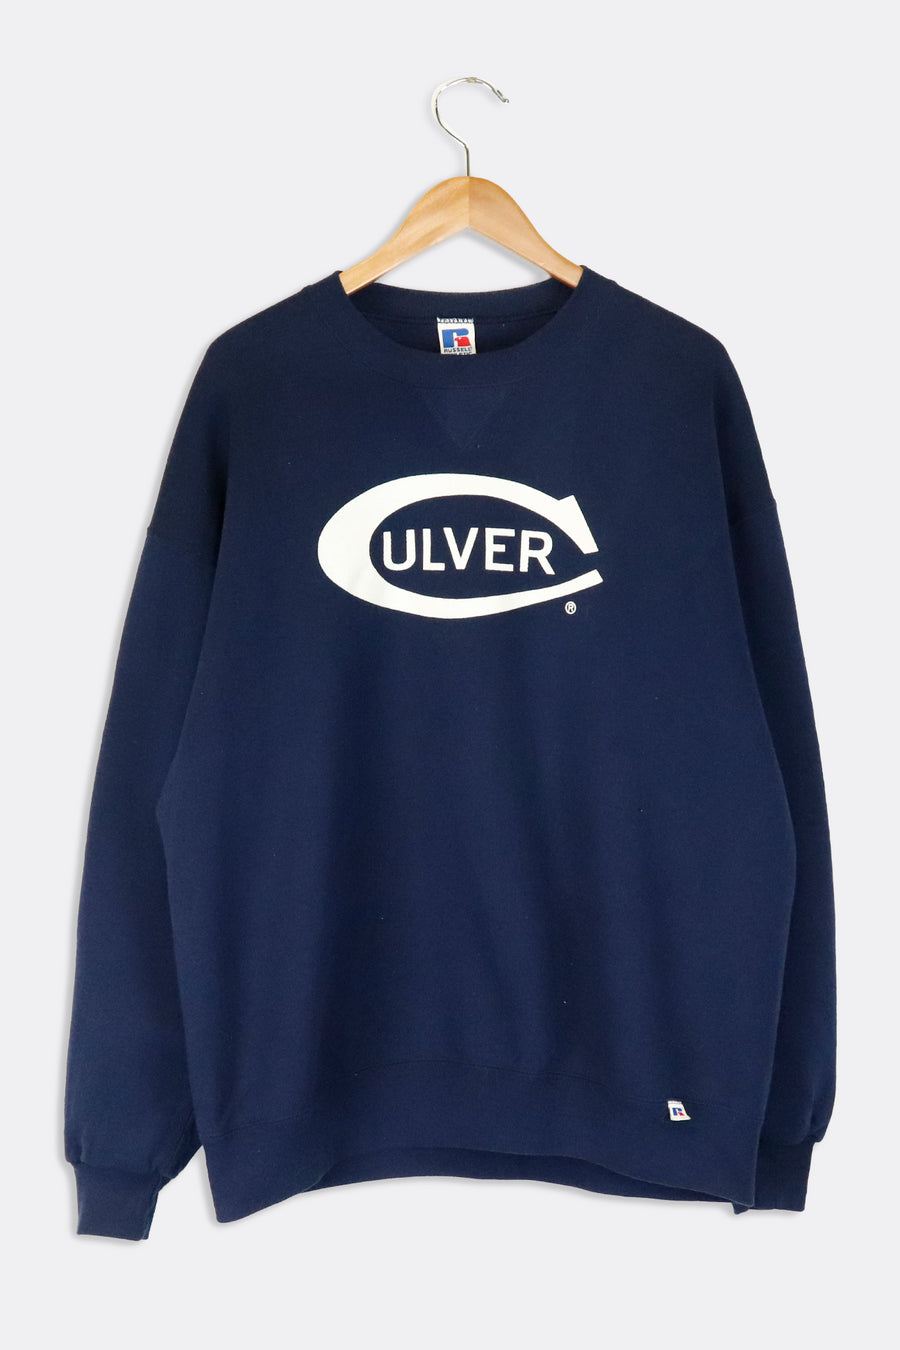 Vintage Culver Academies Ice Hockey Russel Athletics Graphic Sweatshirt Sz XL